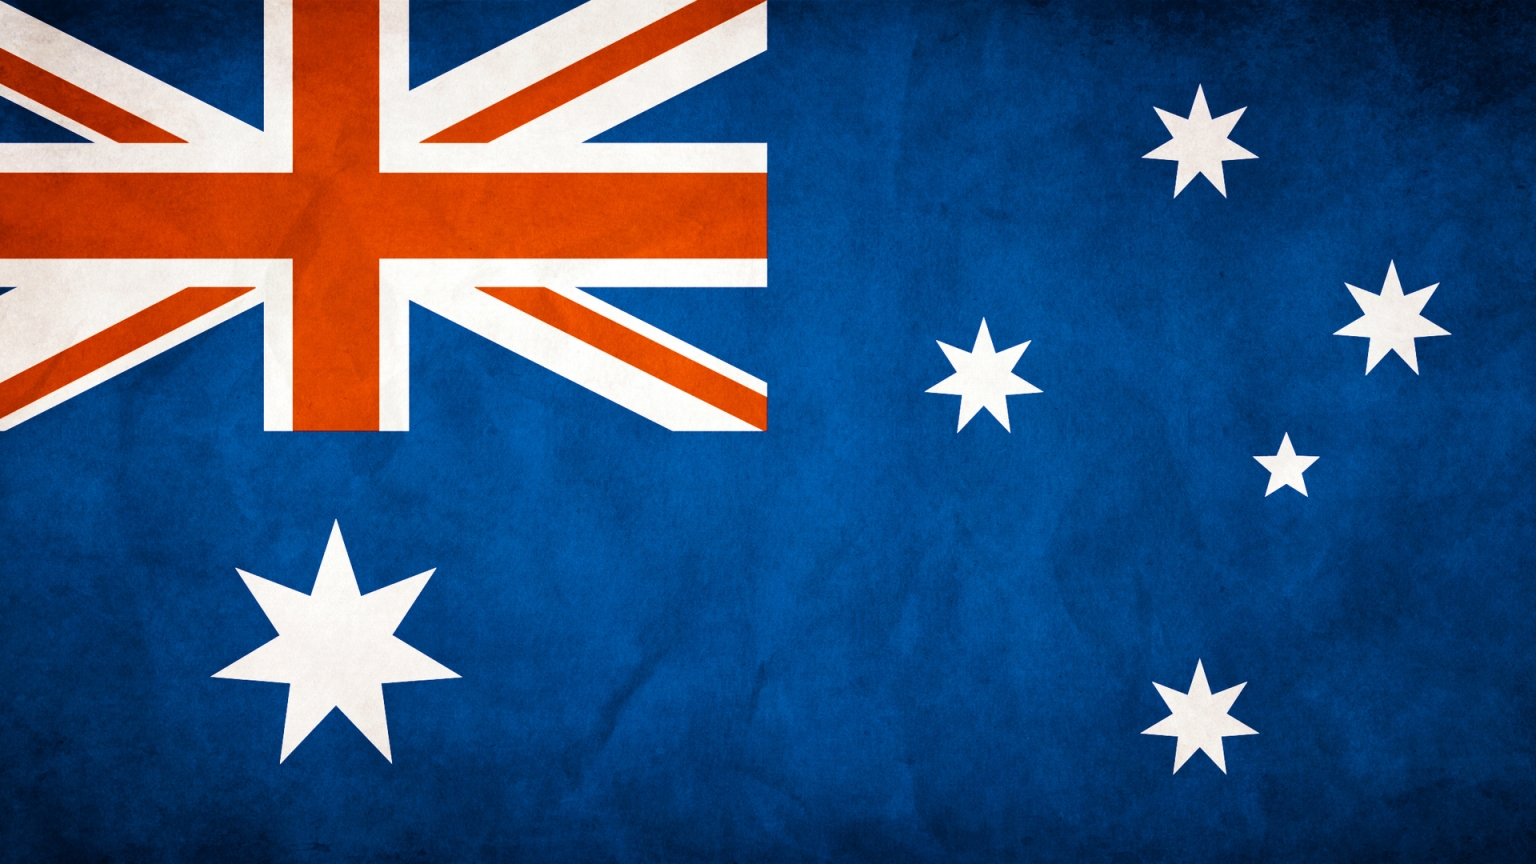 Australia Flag for 1536 x 864 HDTV resolution